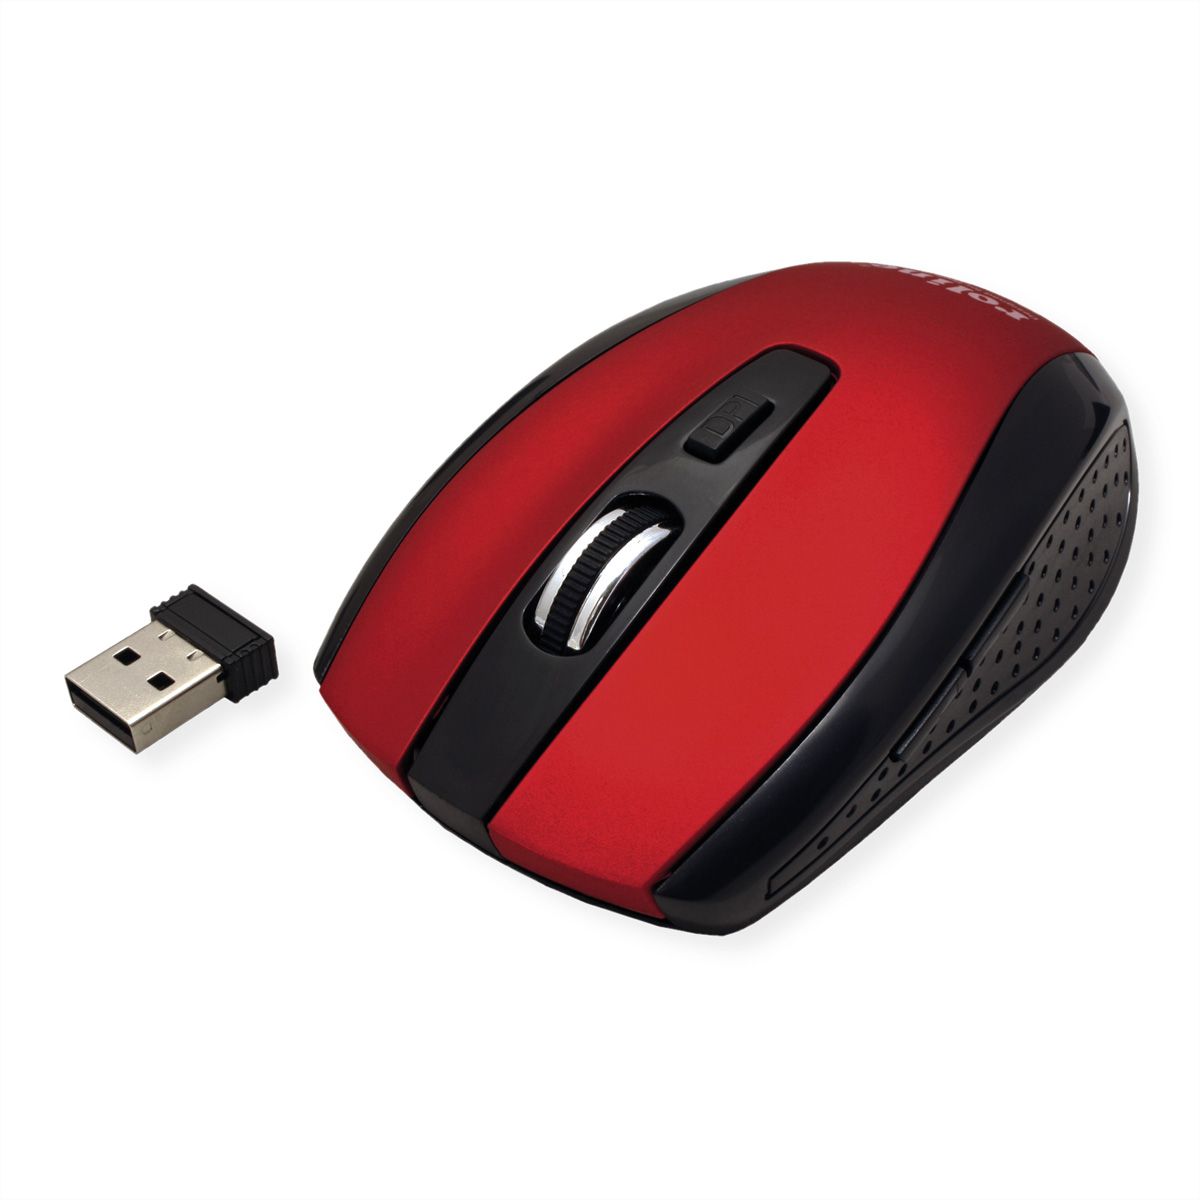 ROLINE Souris optique USB sans fil, rouge/noir - SECOMP France